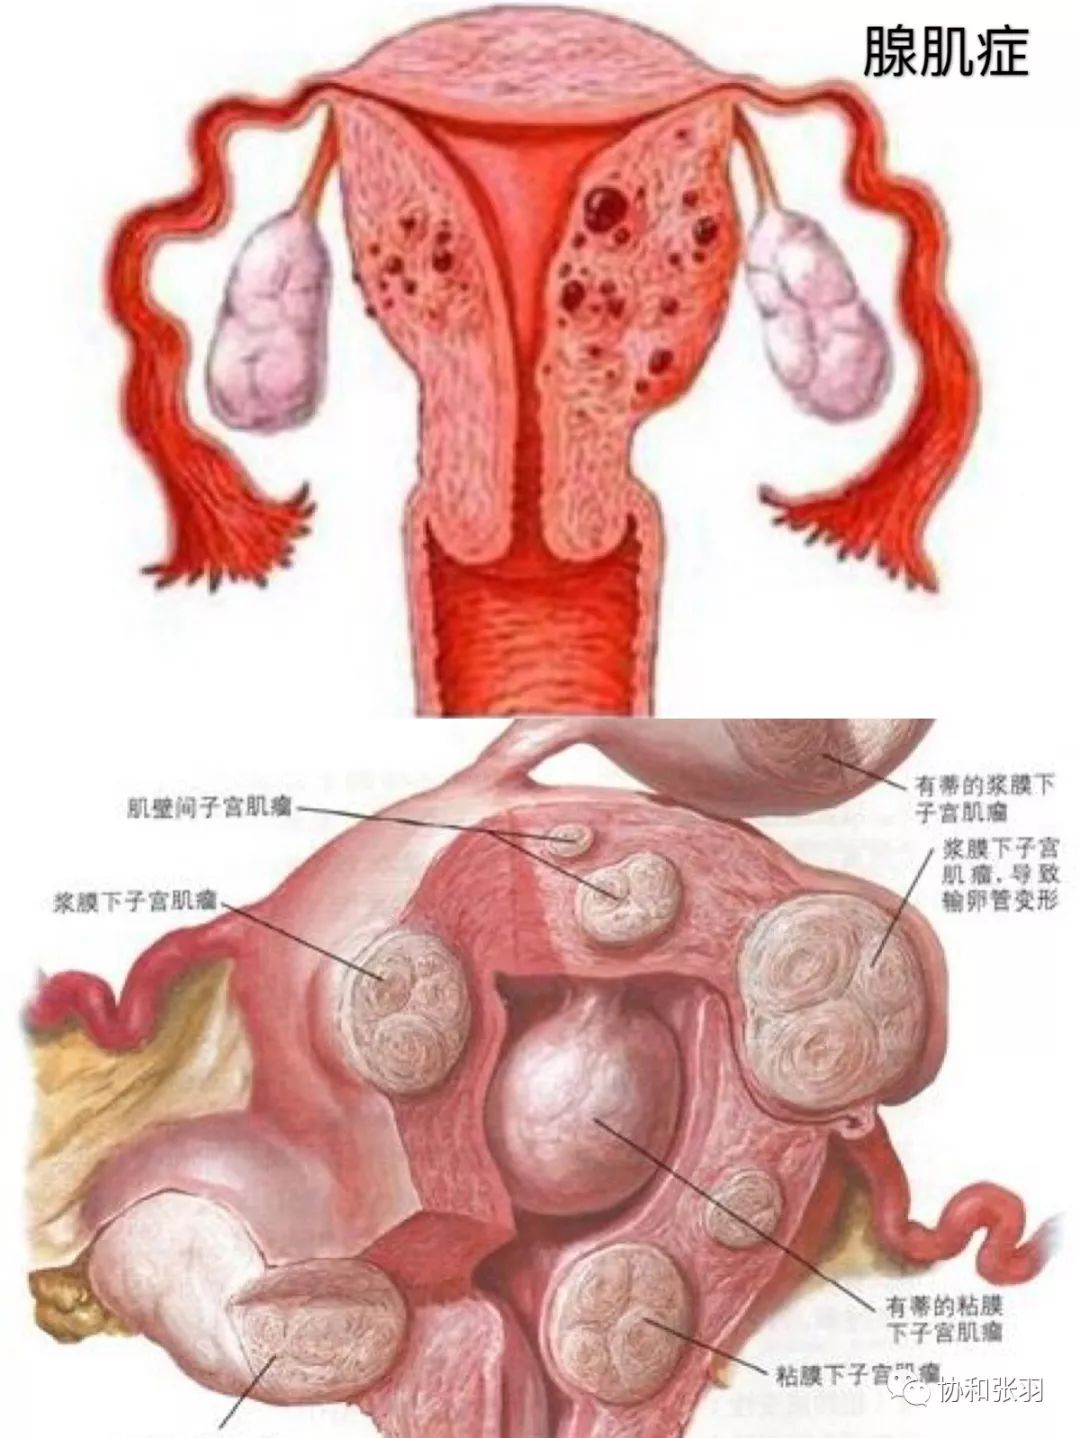 子宫腺肌症会自愈吗文章摘要:子宫腺肌症属于妇科常见病和疑难病,其